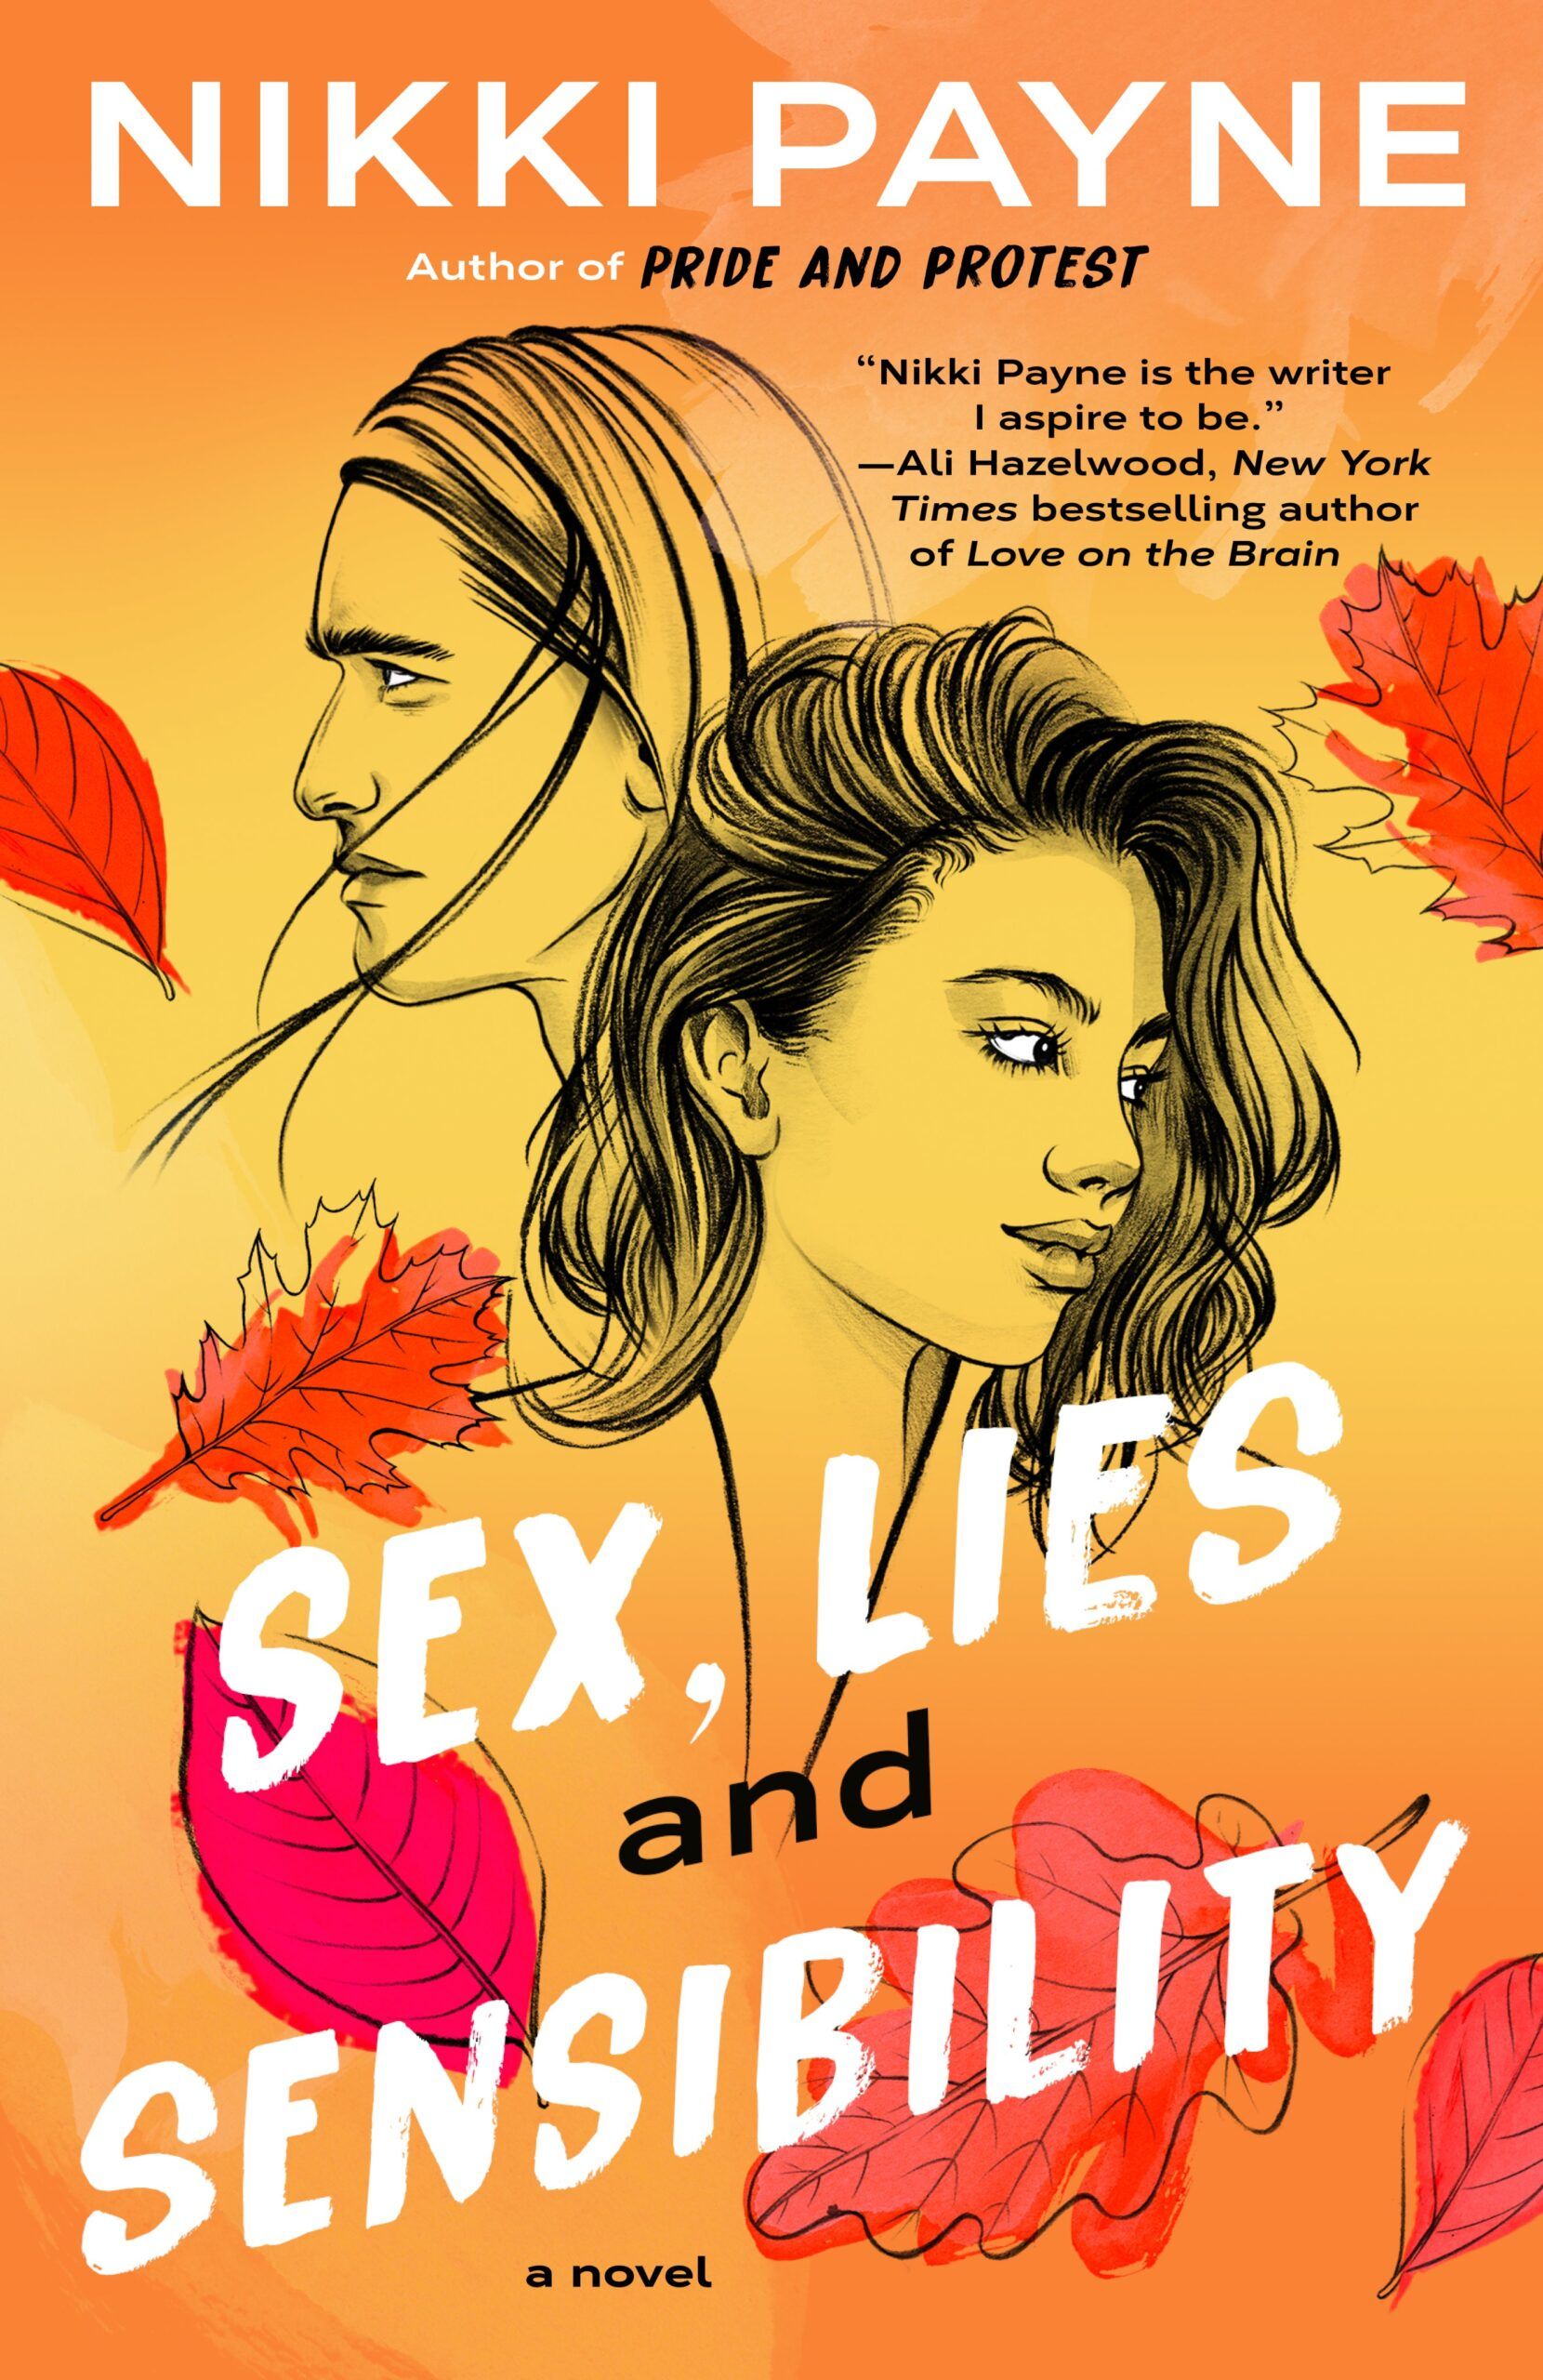 Couverture de Sexe, mensonges et sensibilité de Nikki Payne